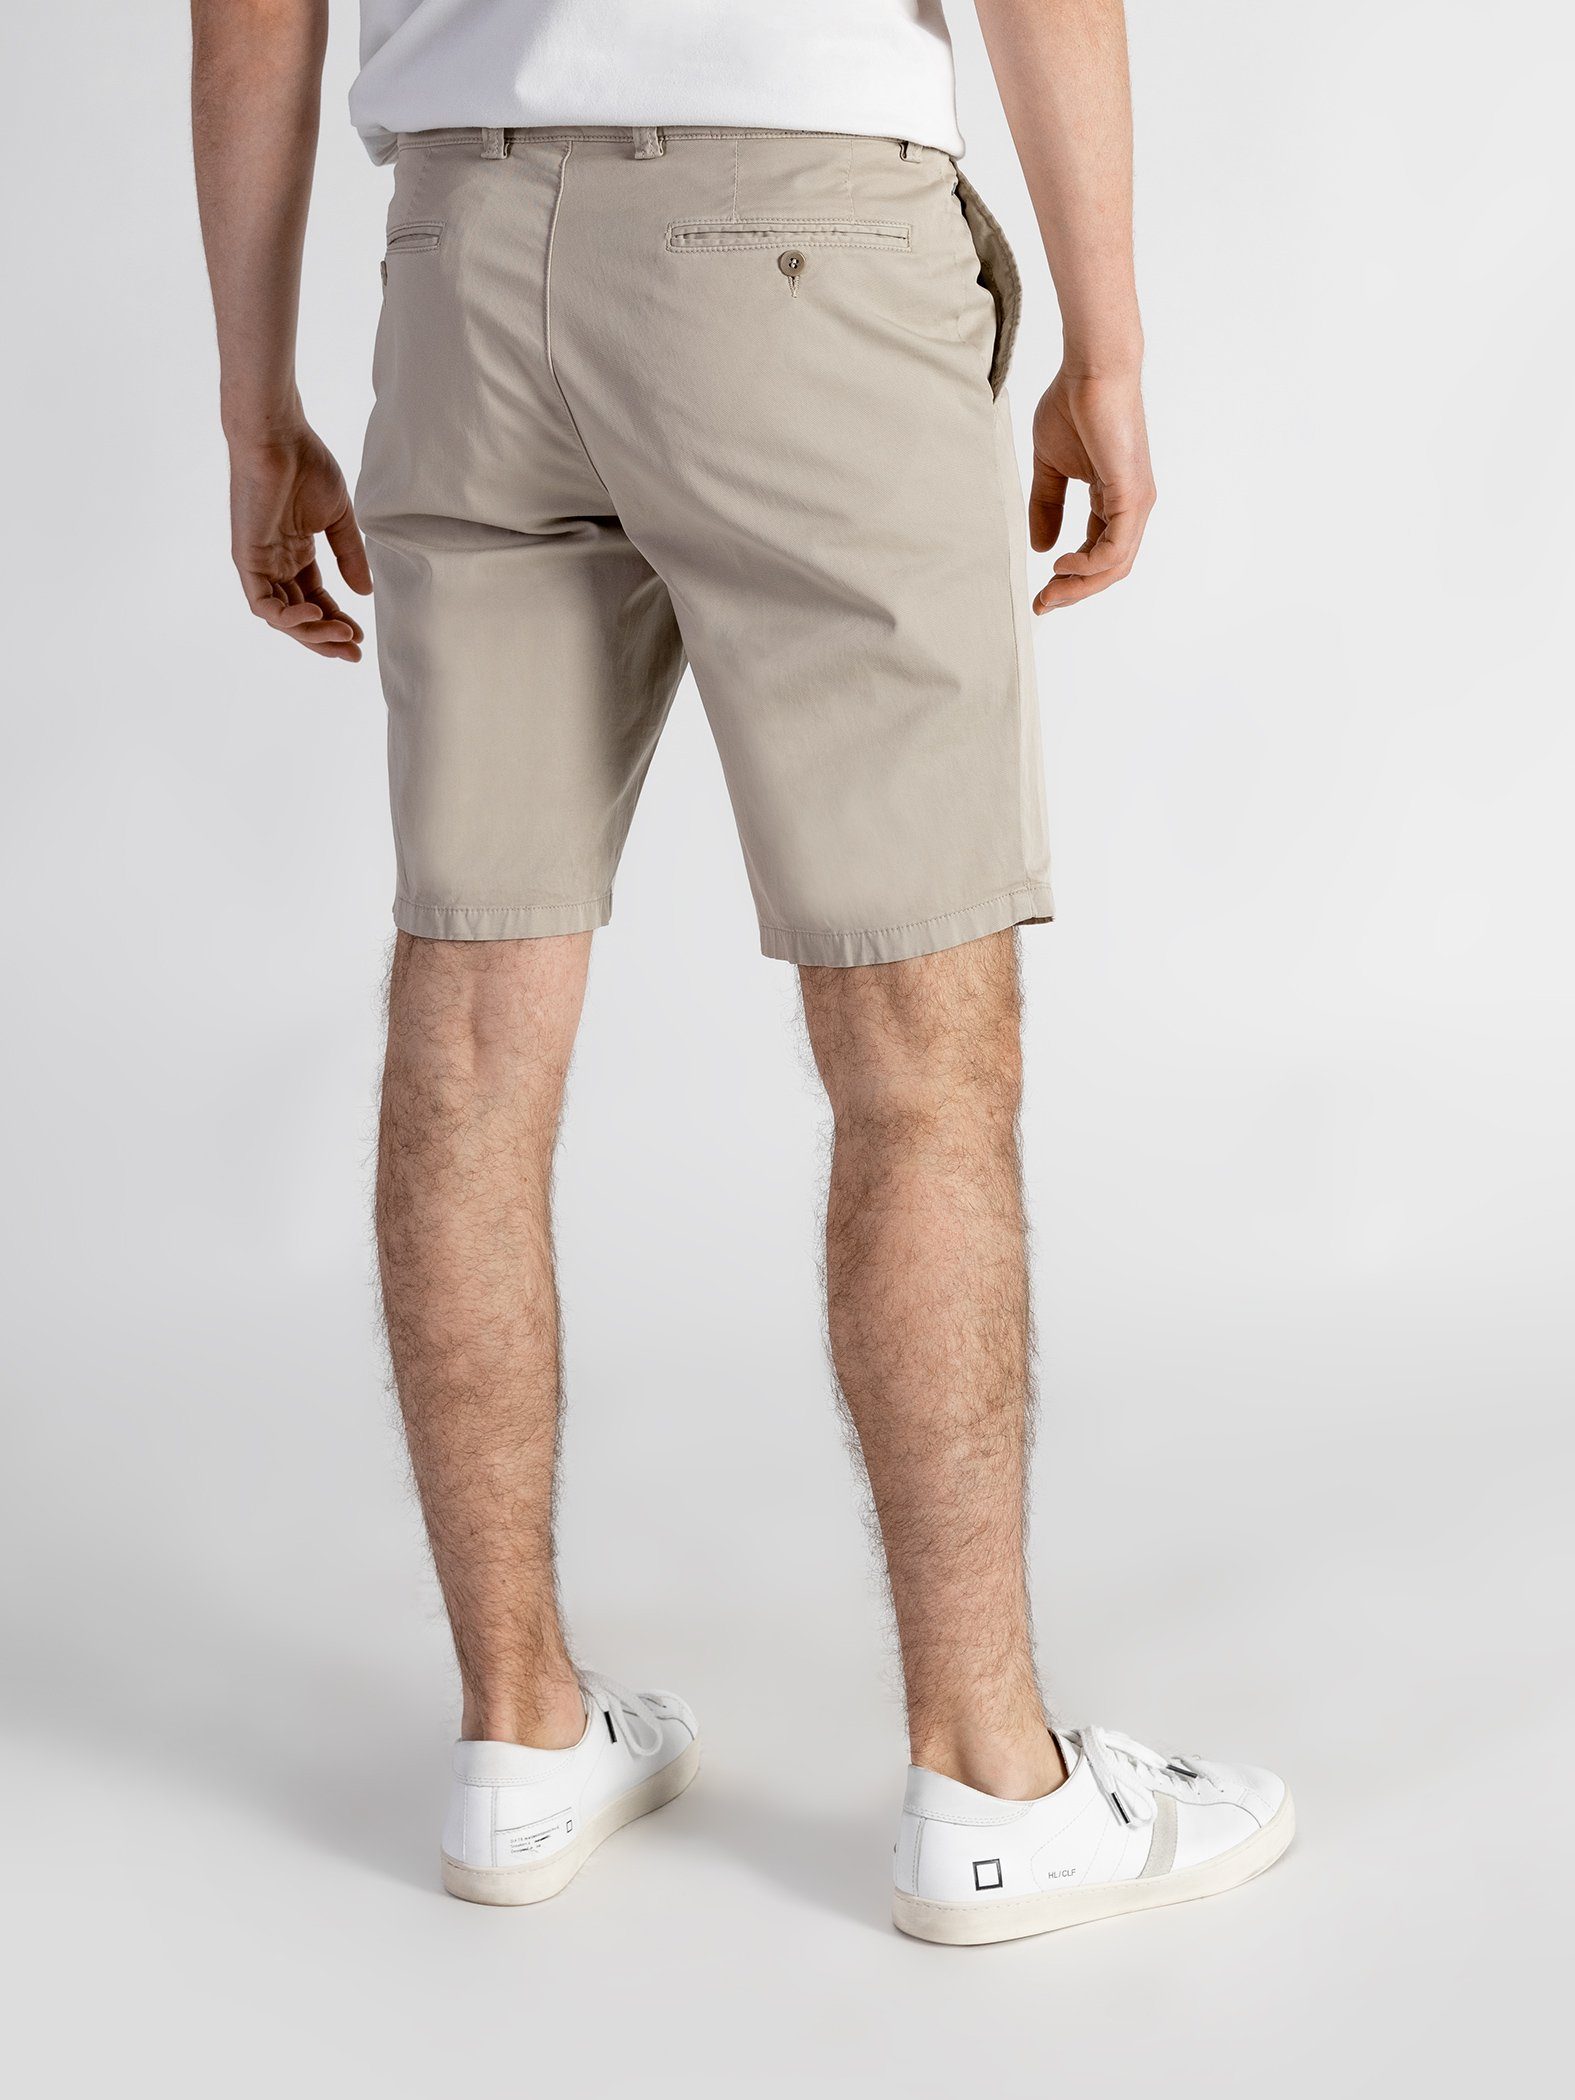 TwoMates Shorts Bund, elastischem sandbeige Shorts GOTS-zertifiziert mit Farbauswahl,